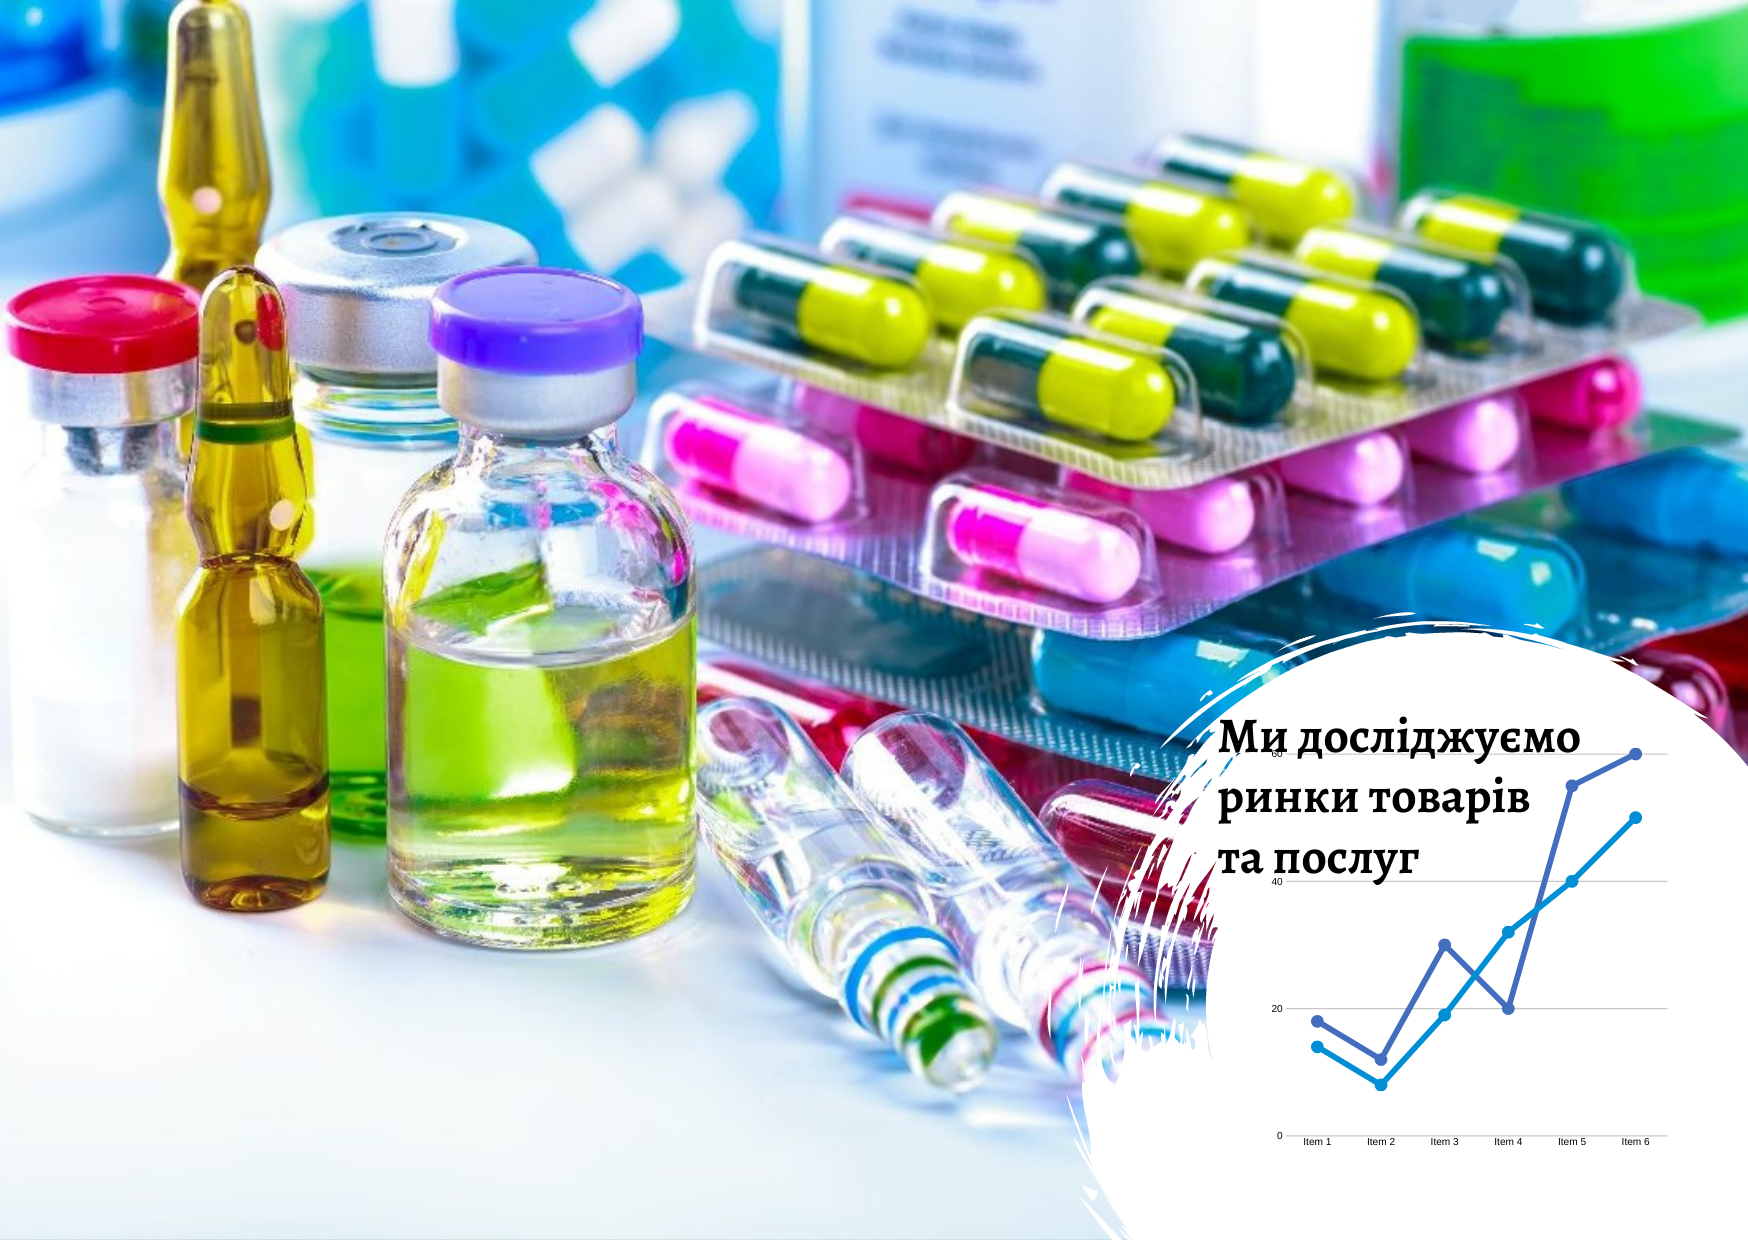 Рынок фармацевтических препаратов и продукции в Украине после начала широкомасштабной агрессии России 